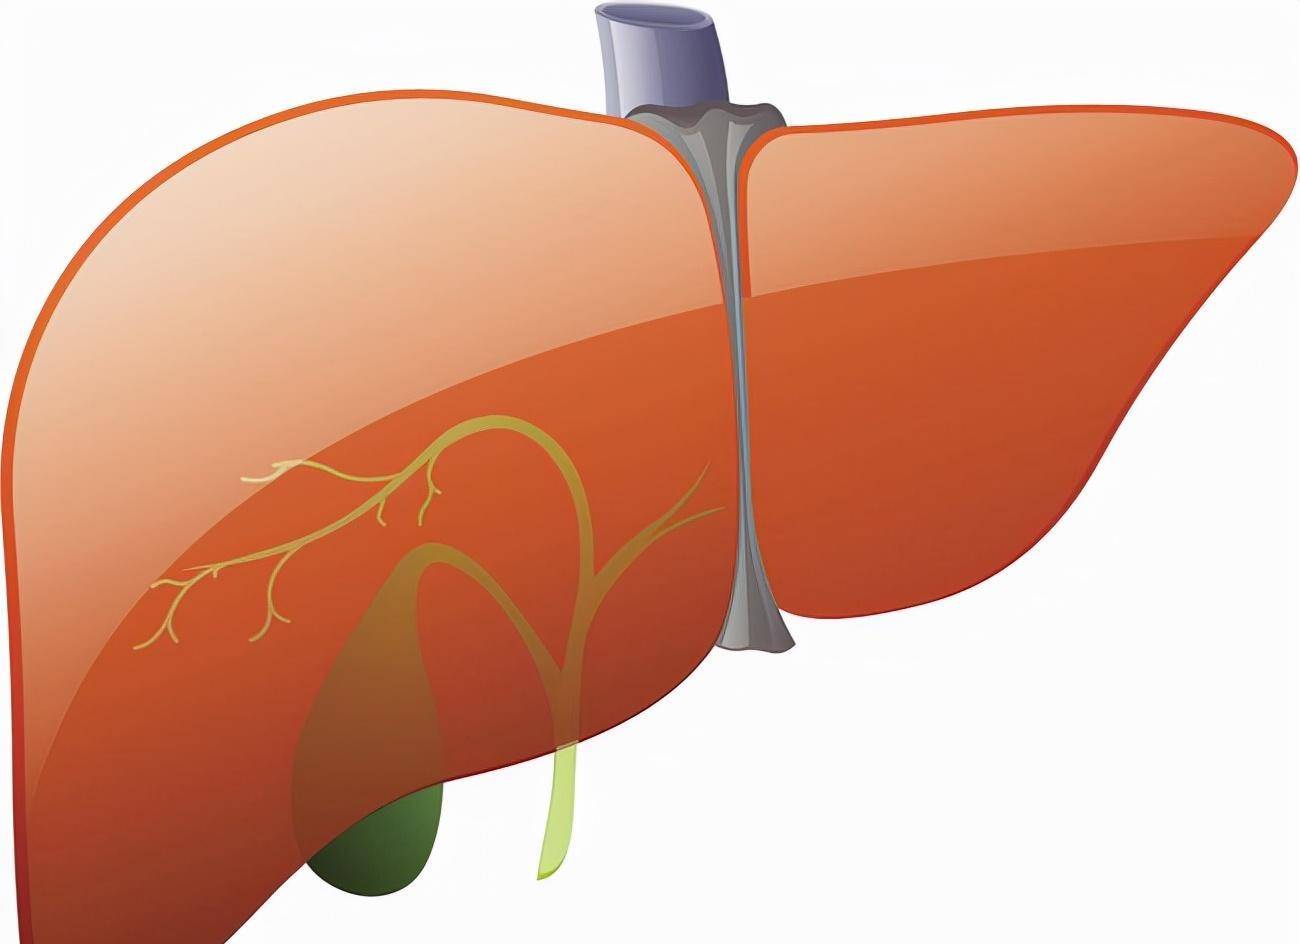 在肝硬化中,门脉压力通常升高,胆囊通常随着肝脏的变化而收缩和上下